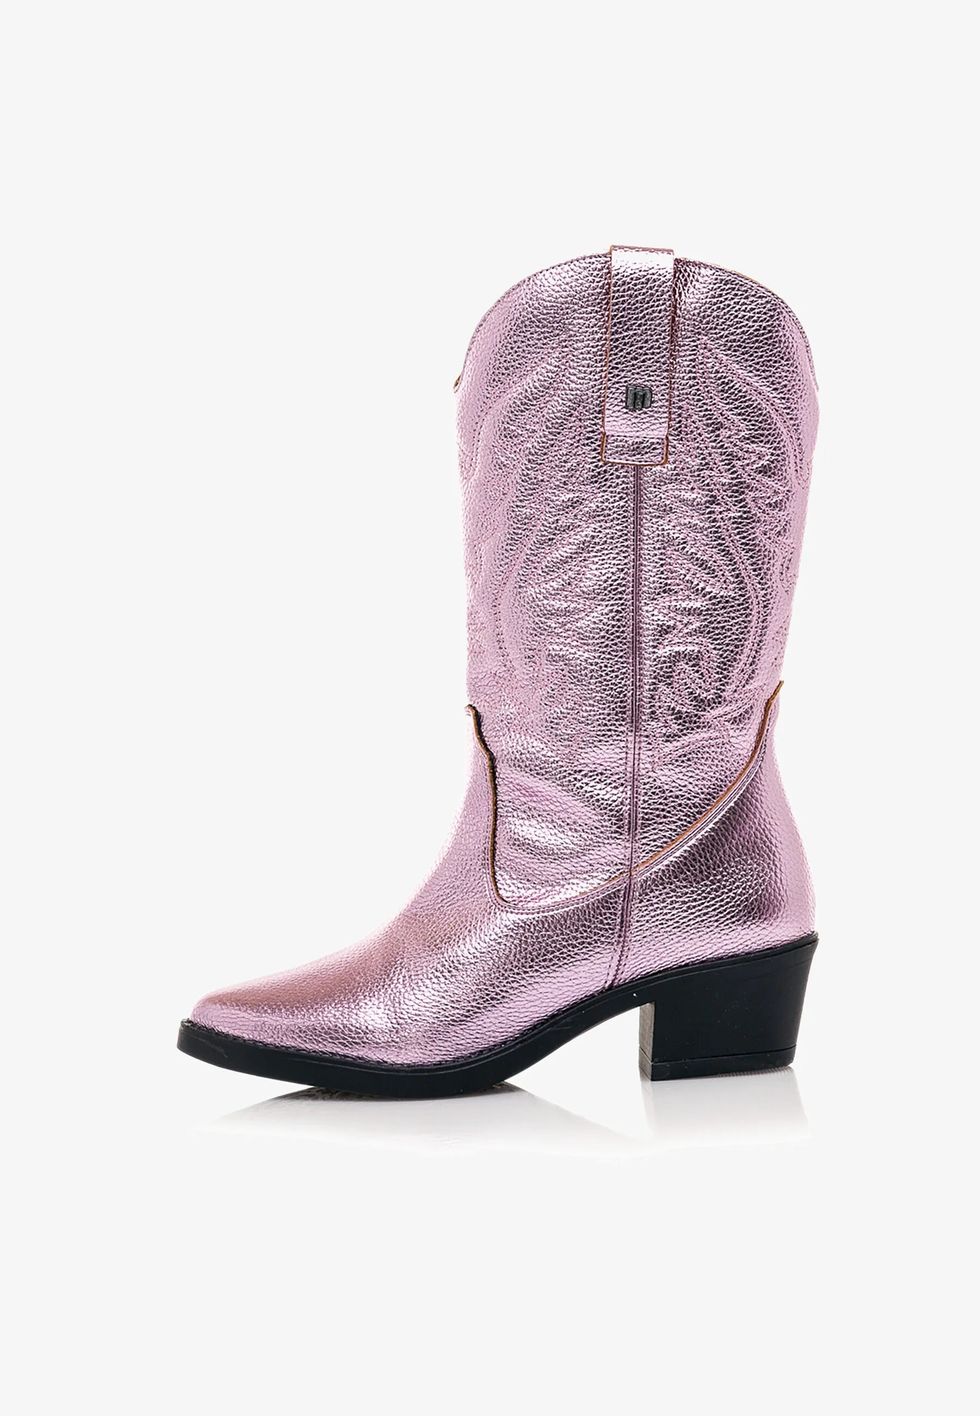 scarpe primavera 2023 gli stivali texani più belli da comprare online, scopri i western metallizzati e i camperos a tinta unita da avere secondo le tendenze donna